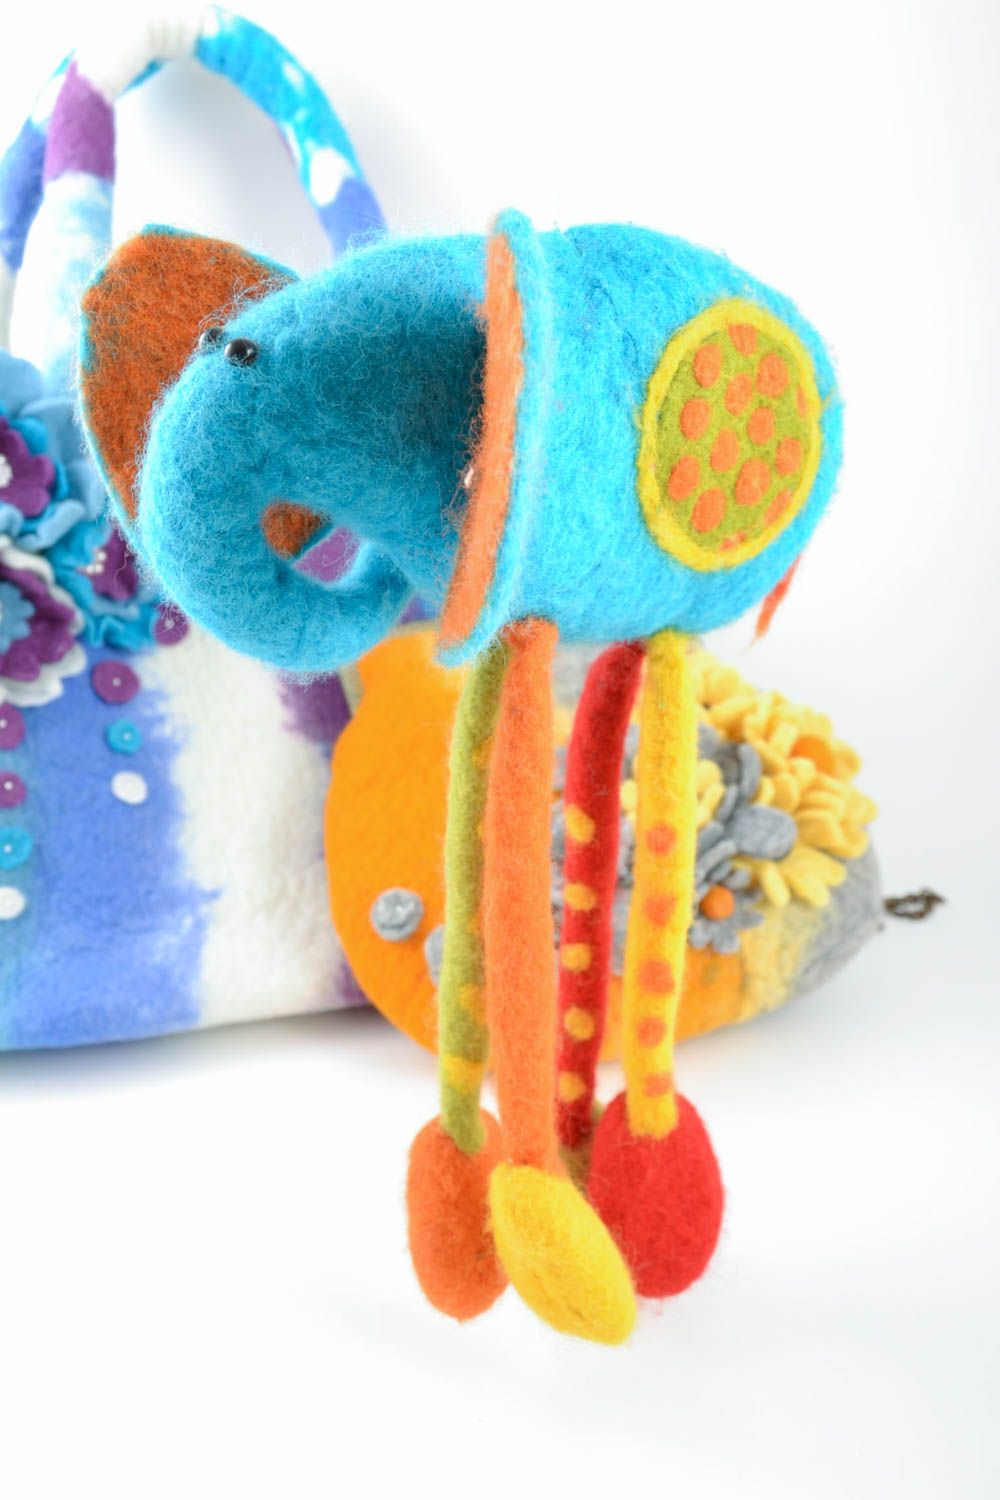 Авторская мягкая игрушка голубой слон ручной работы красивая для дома и детей фото 1